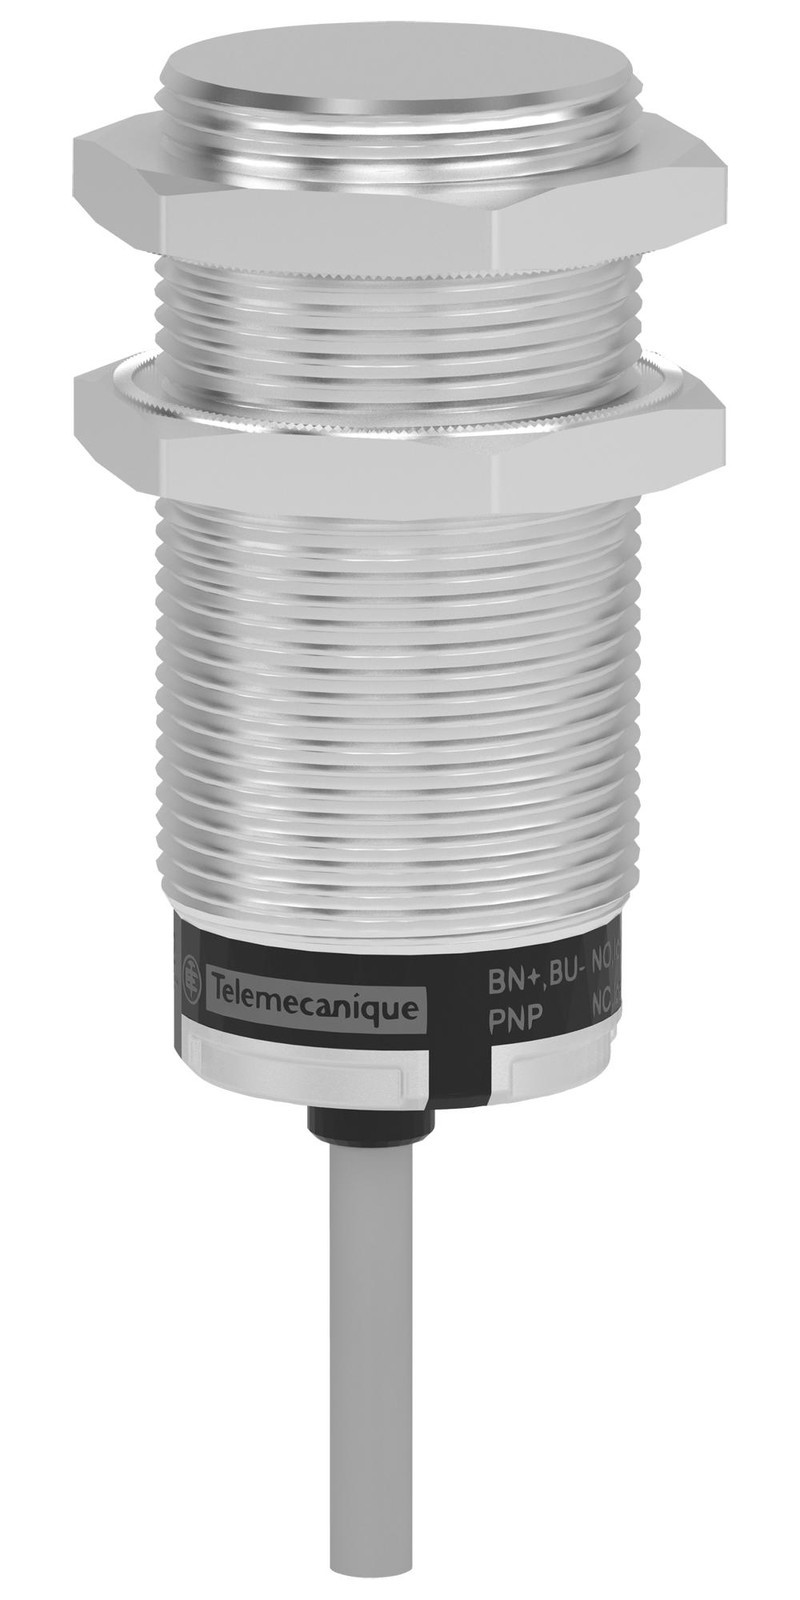 Telemecanique Sensors Xt530B1Pcl2 Sensor, Capacitor Proximity, 10mm, 24Vdc